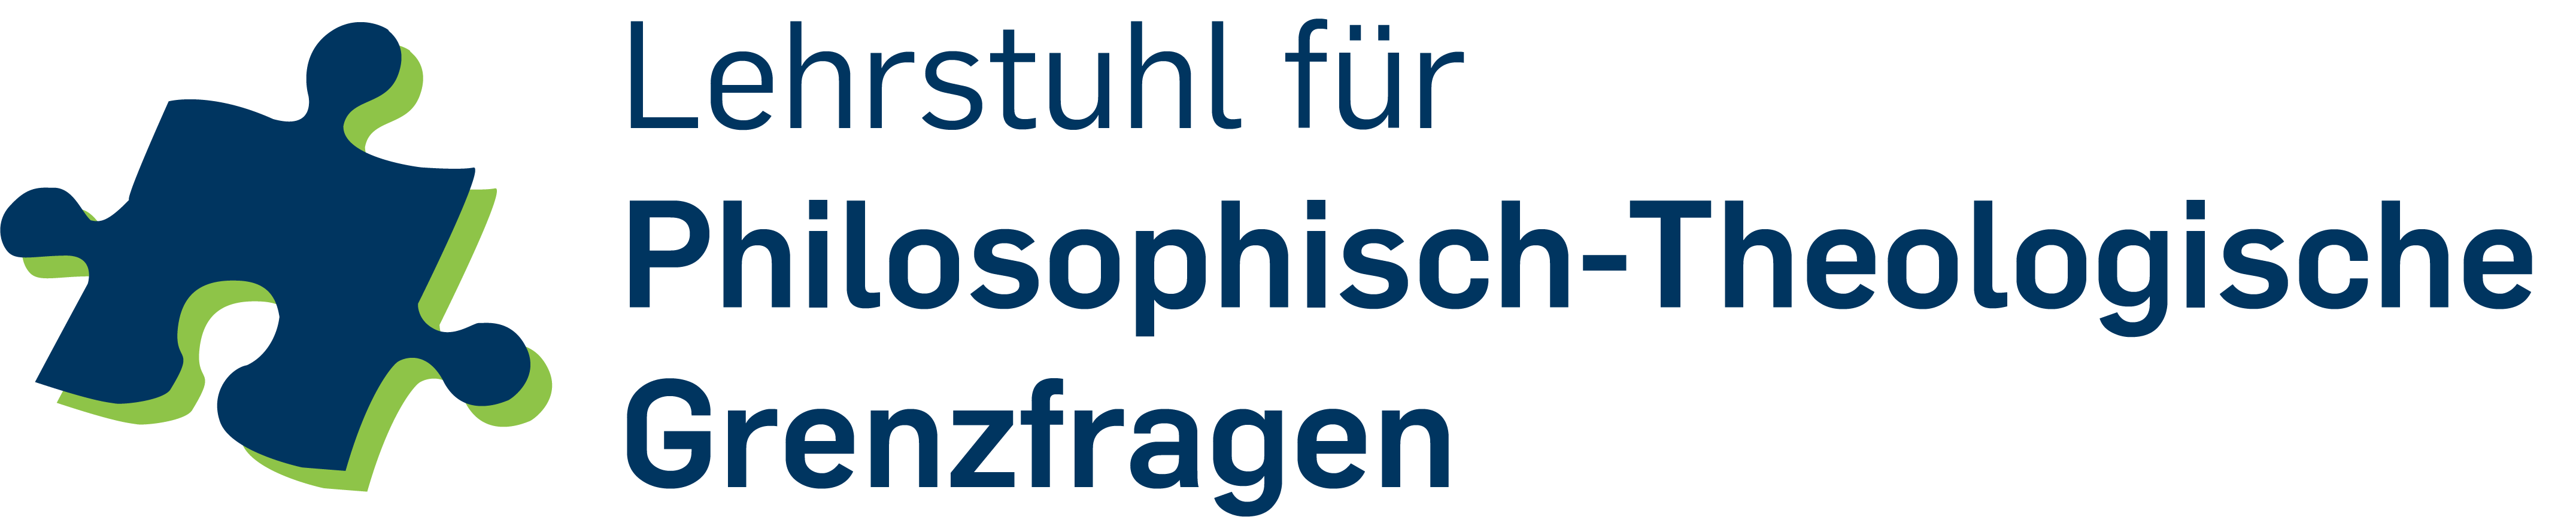 Logo Lehrstuhl für Philosophisch-Theologische Grenzfragen